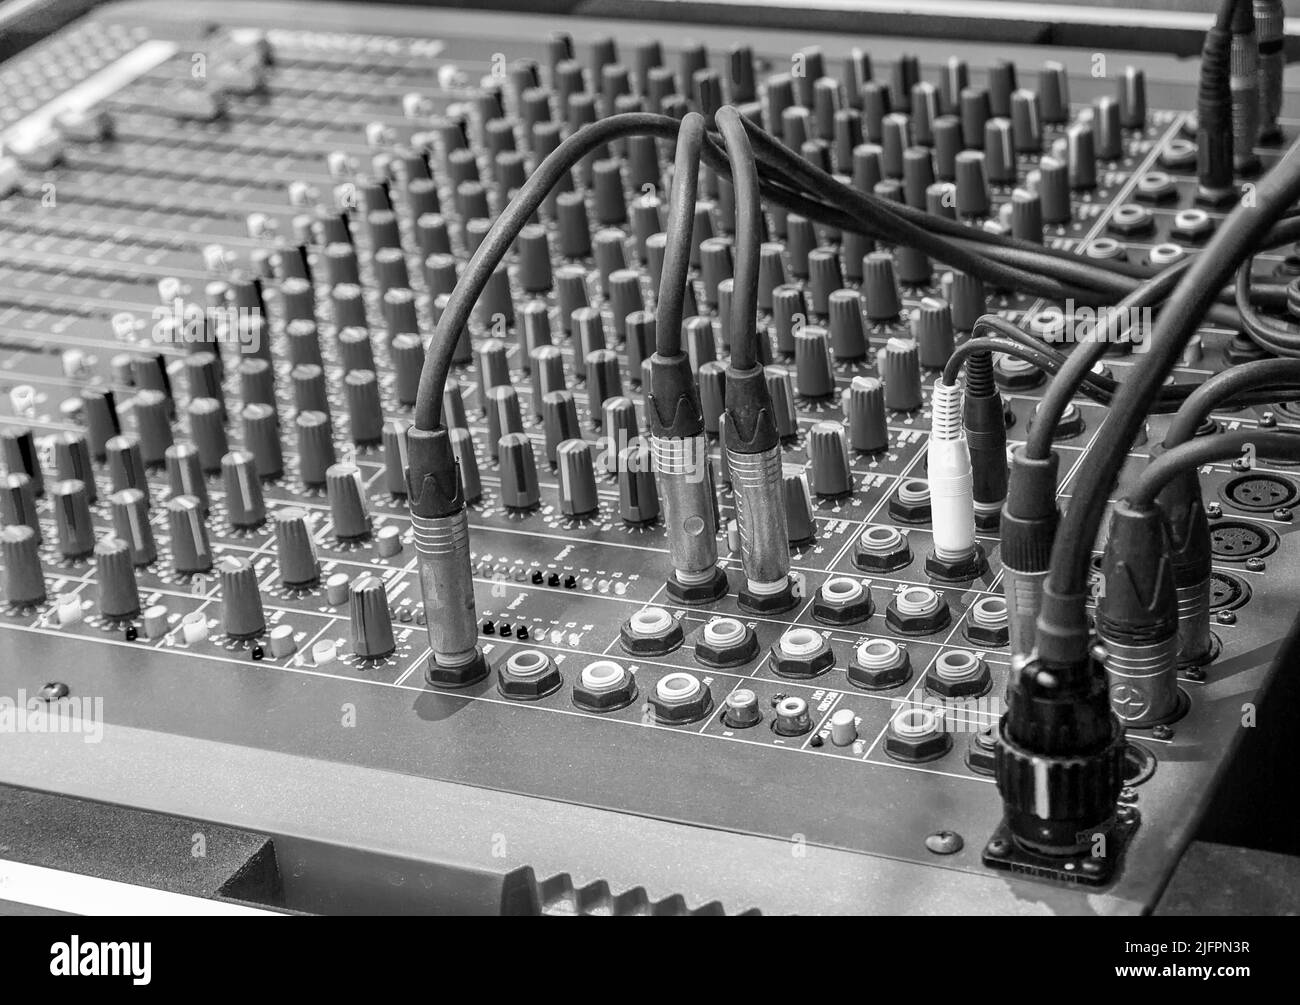 Missaggio radio in studio in bianco e nero. Mixer audio. Apparecchiature audio digitali. Equalizzatore professionale per mix da concerto, controllo del volume, controllo elettronico in Foto Stock